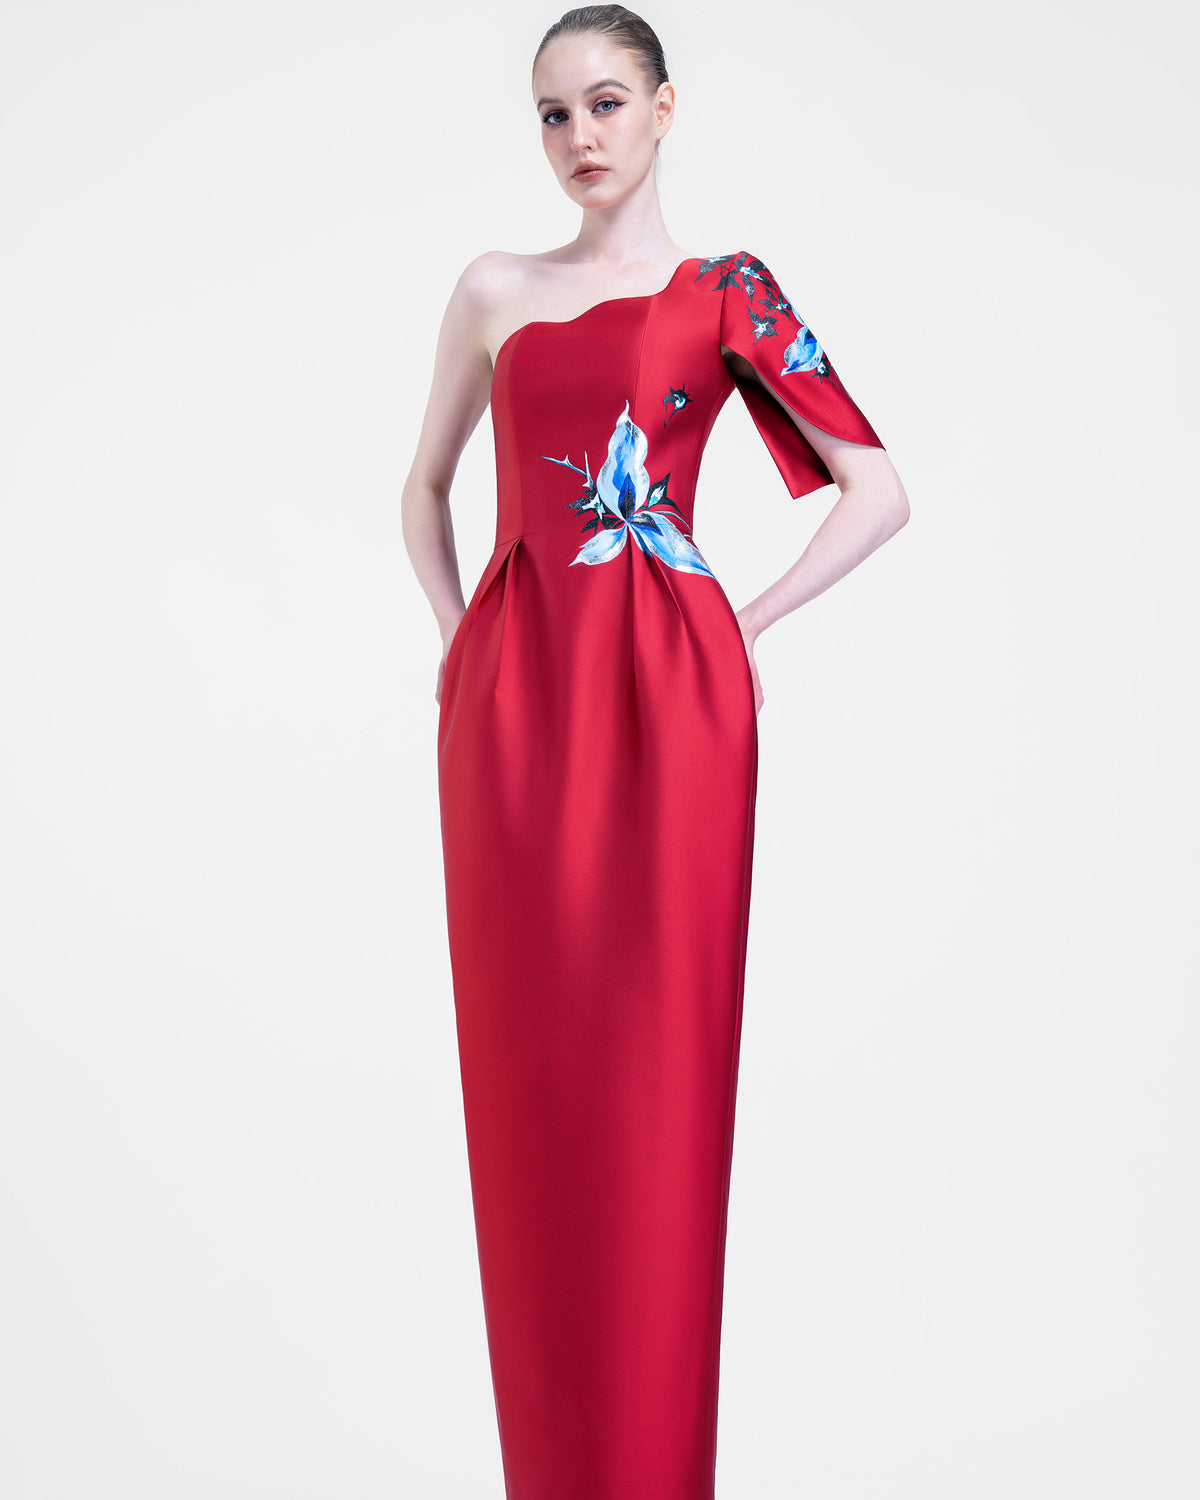 Aphrodite - One-shoulder Crimson Evening Dress